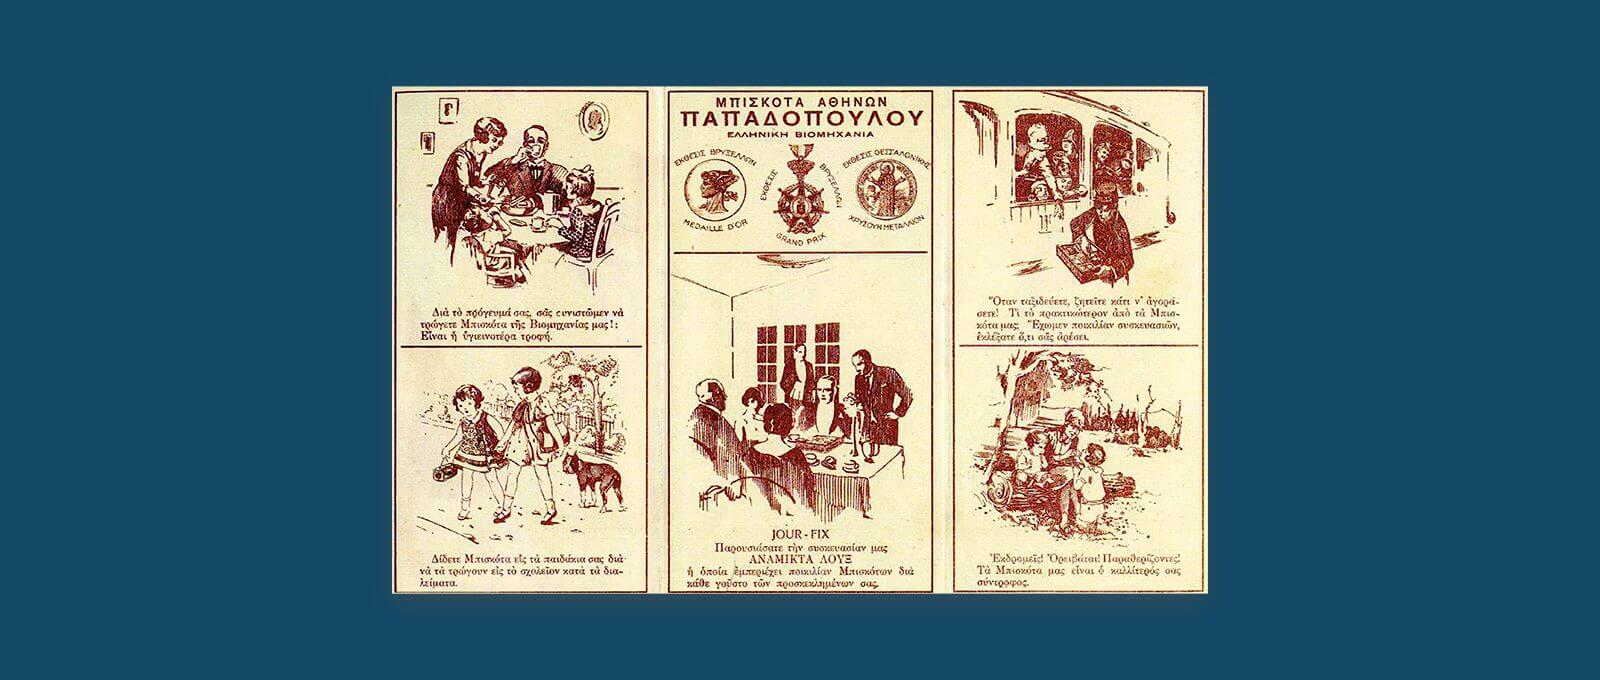 Αρχές δεκαετίας 1930. Σύνθεση διαφημιστικών καταχωρίσεων εταιρείας. Απεικονίζει κατανάλωση μπισκότων σε διάφορες περιστάσεις (πρωινό, σχολείο, συνάντηση, ταξίδι με τρένο, εκδρομή). Σημειώνονται ακόμη βραβεία που έχει λάβει η εταιρεία στις εκθέσεις Βρυξελλών και Θεσσαλονικής. 